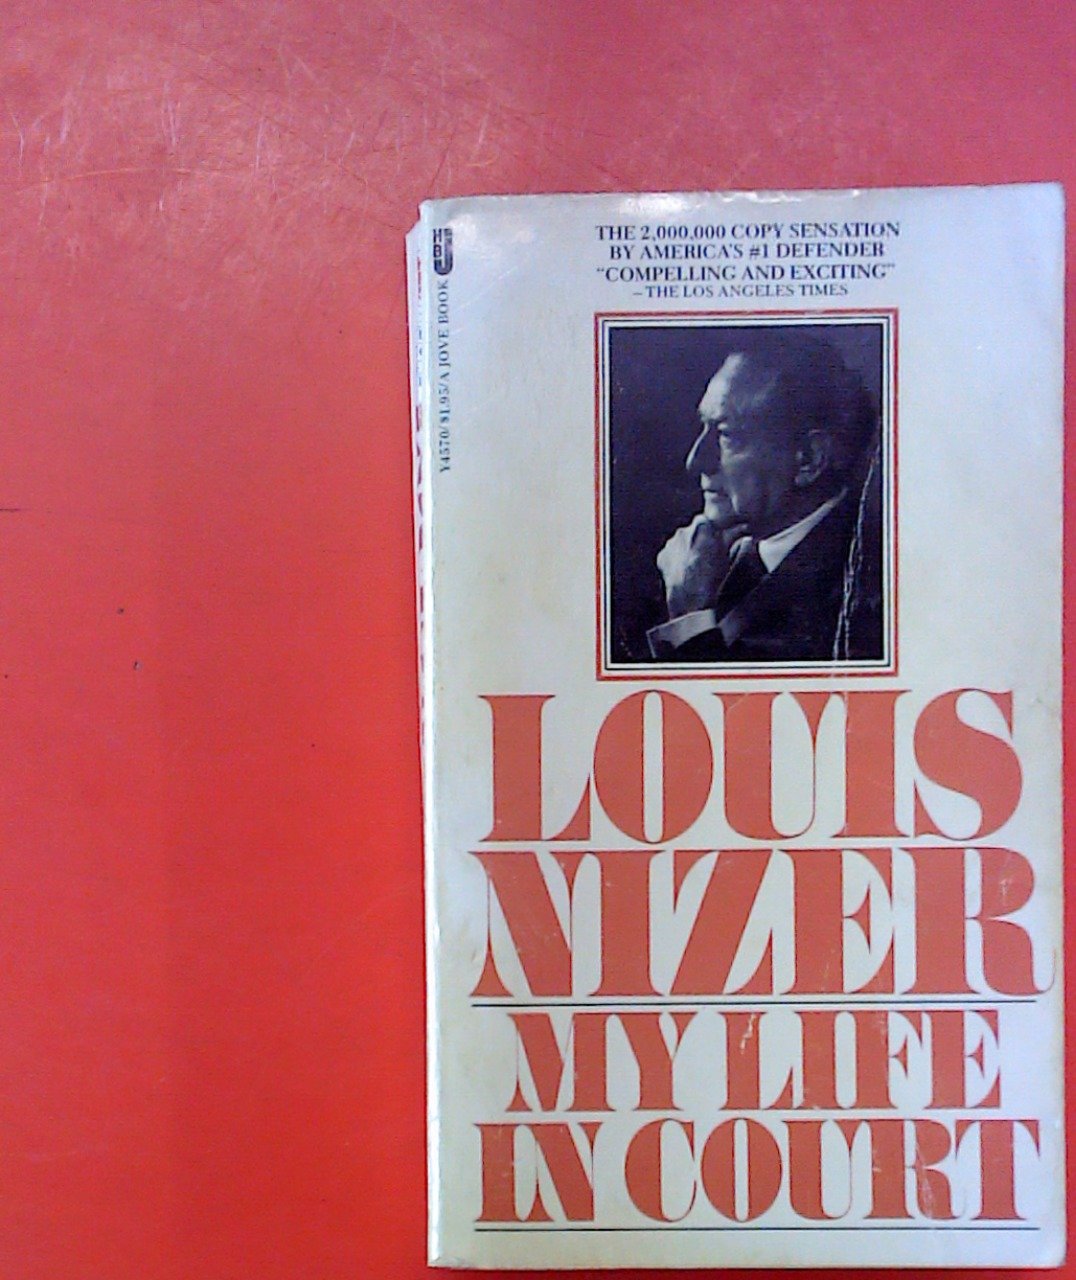 My Life in Court “ (Louis Nizer) – Buch gebraucht kaufen